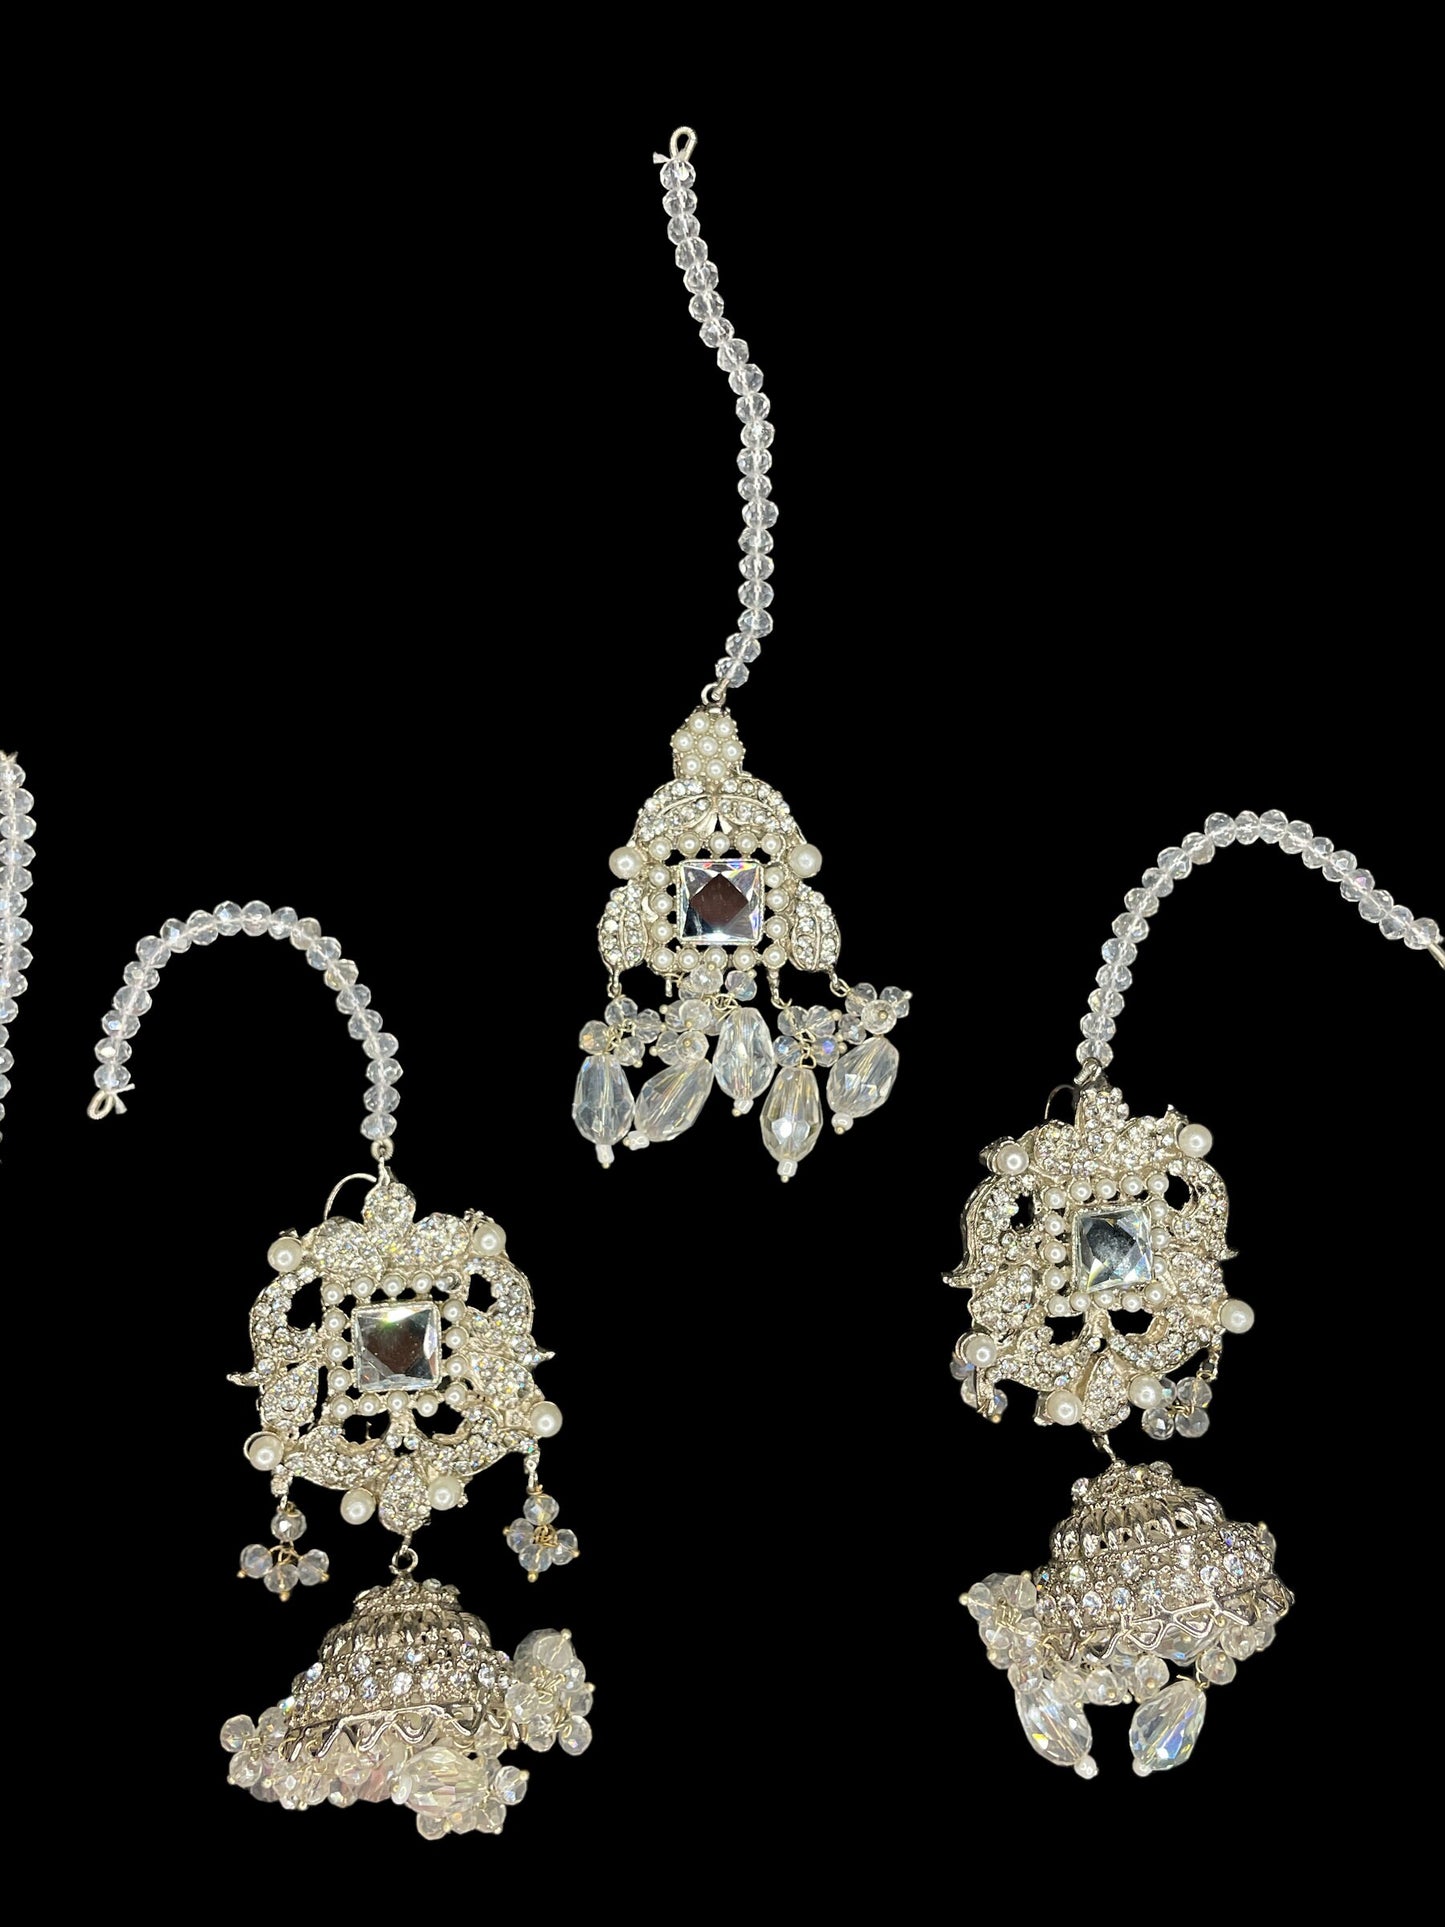 Collar de oro largo indio con pendientes/nikkah rani haar/joyería de boda paquistaní/recepción de conjunto nupcial de perla blanca de oro/walima tradicional